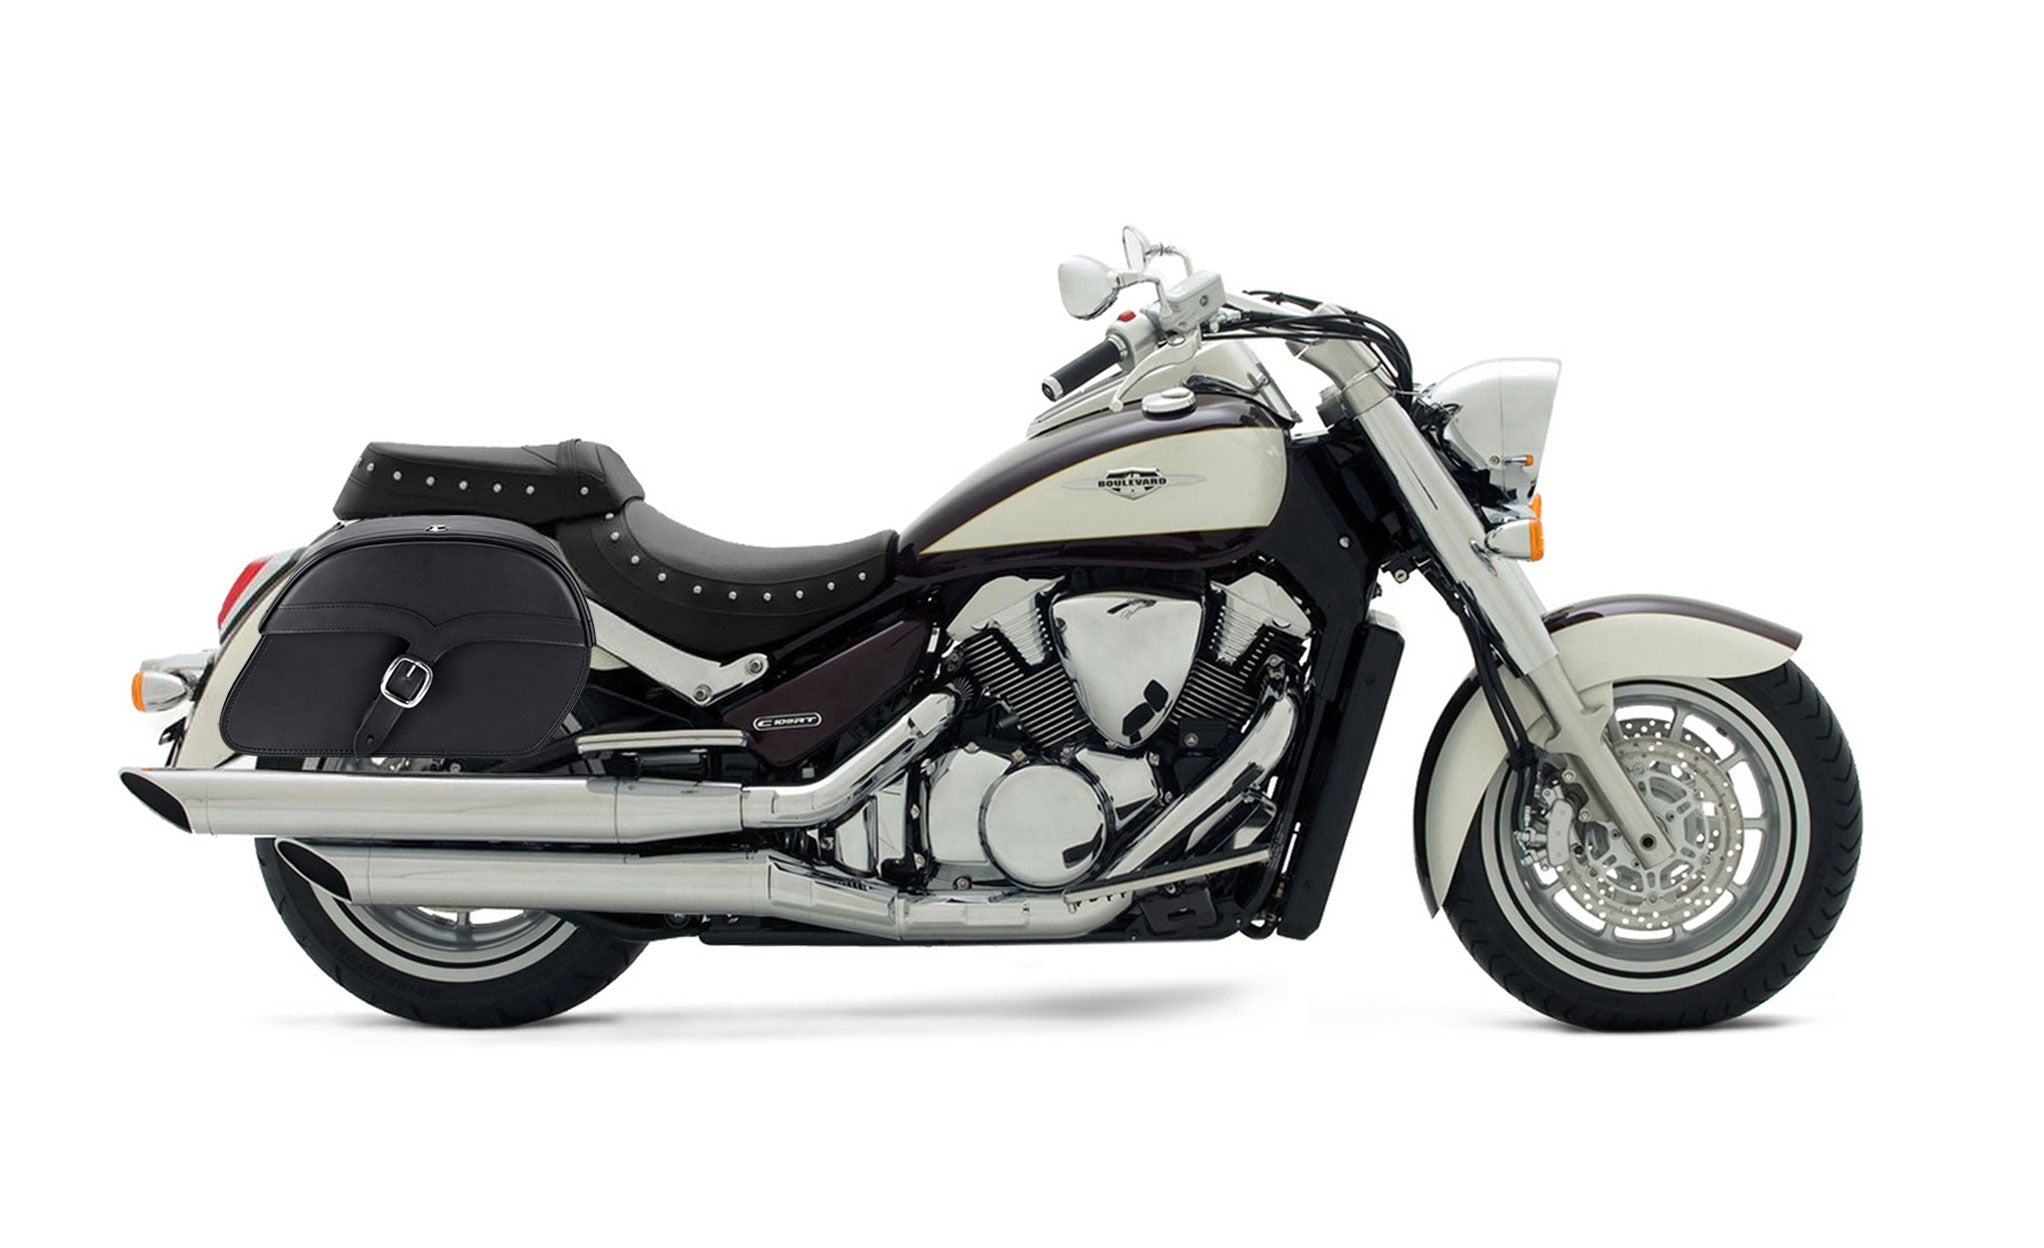 Viking Vintage Single Strap Large Suzuki Boulevard C109 Leather Motorcycle Saddlebags on Bike Photo @expand